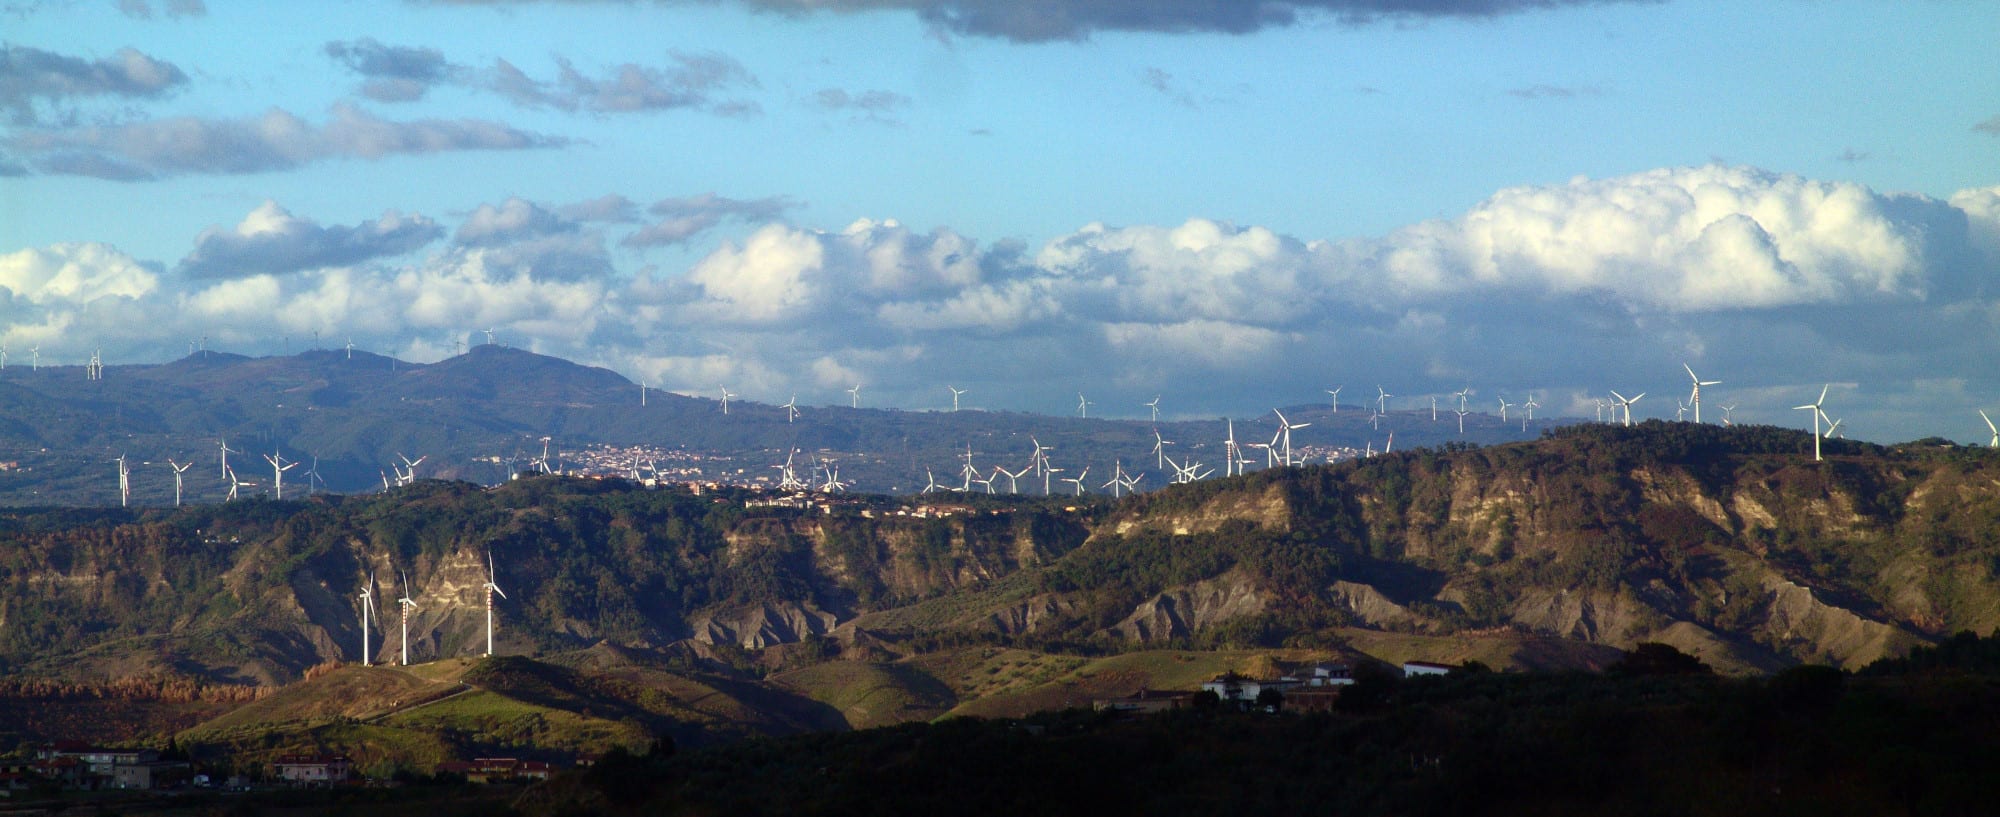 Moratoria eolico in Calabria: attiva su Change.org la petizione per chiedere lo stop agli impianti